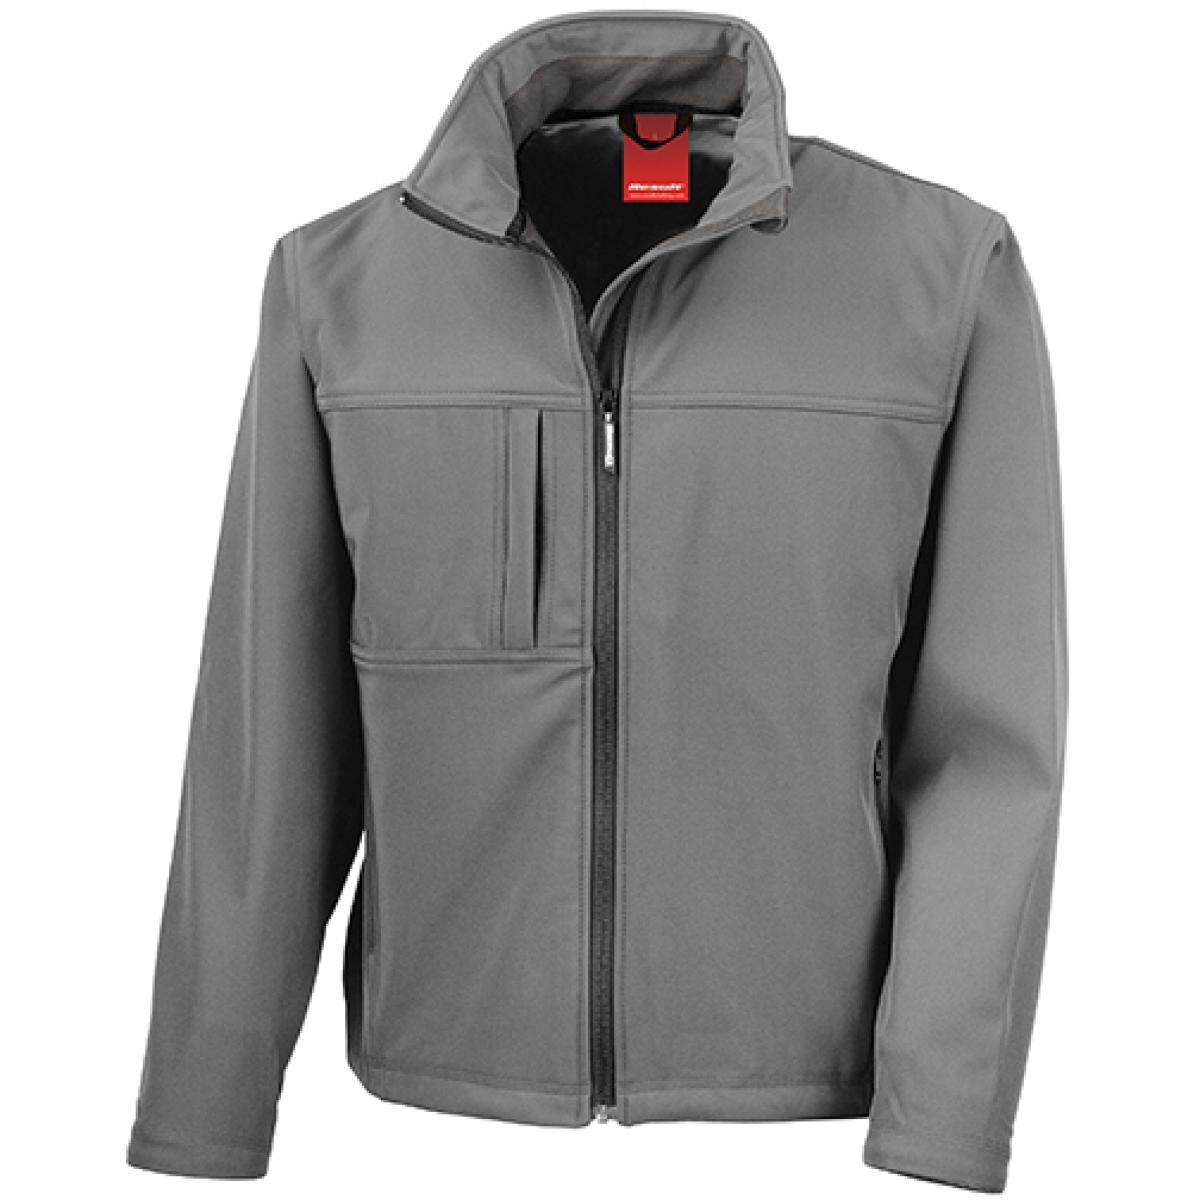 Hersteller: Result Herstellernummer: R121M Artikelbezeichnung: Classic Soft Shell Jacket Farbe: Workguard Grey